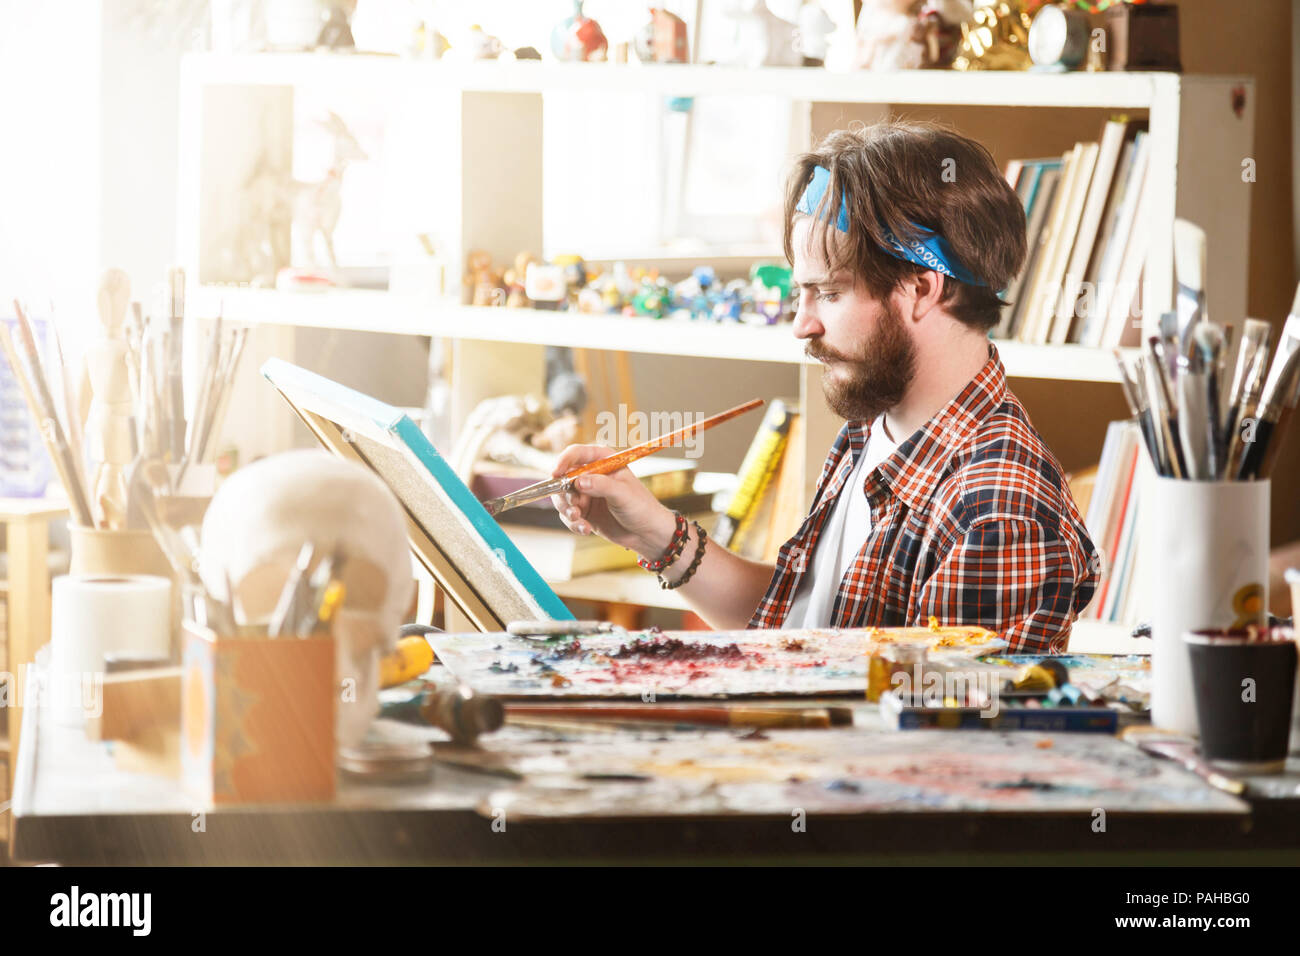 Jeune homme de race blanche à l'artiste avec dessin bandana bleu brosse et huile sur toile dans son studio ensoleillé Banque D'Images